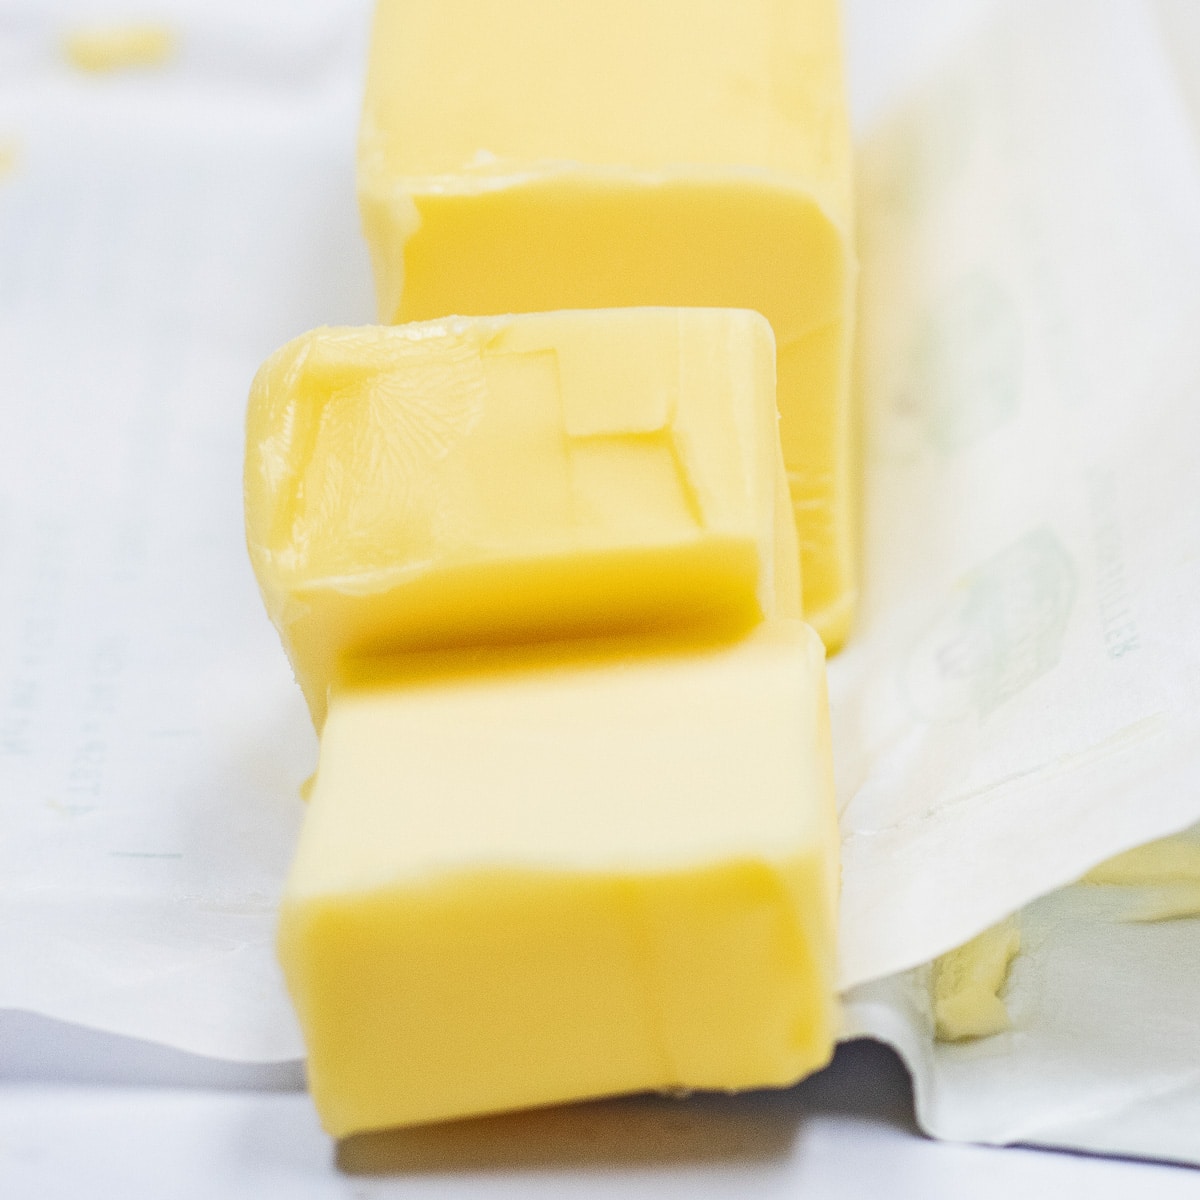 Beste Butterersatzoptionen, um die hier gezeigte geschnittene europäische Butter zu ersetzen.